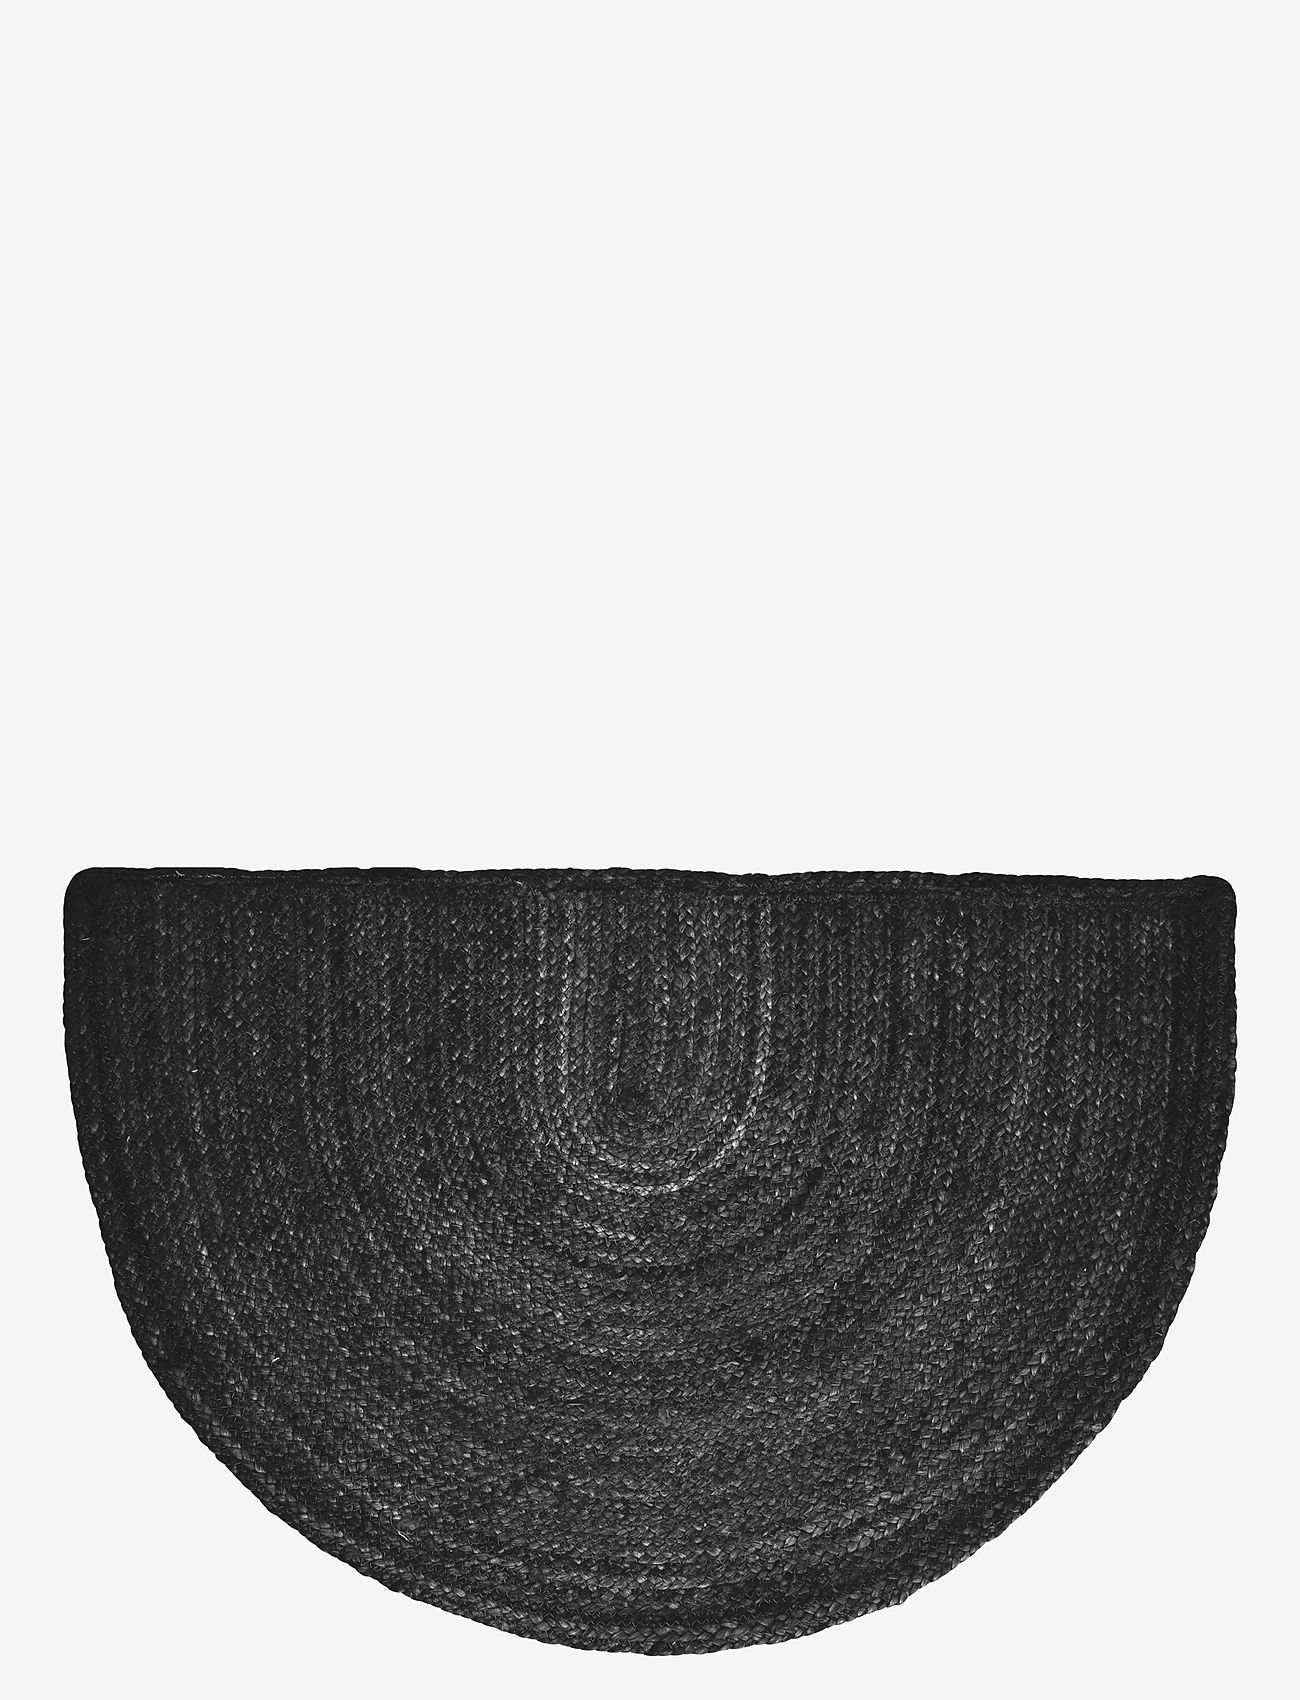 Boel & Jan - Merida   Carpet - laveste priser - black - 0